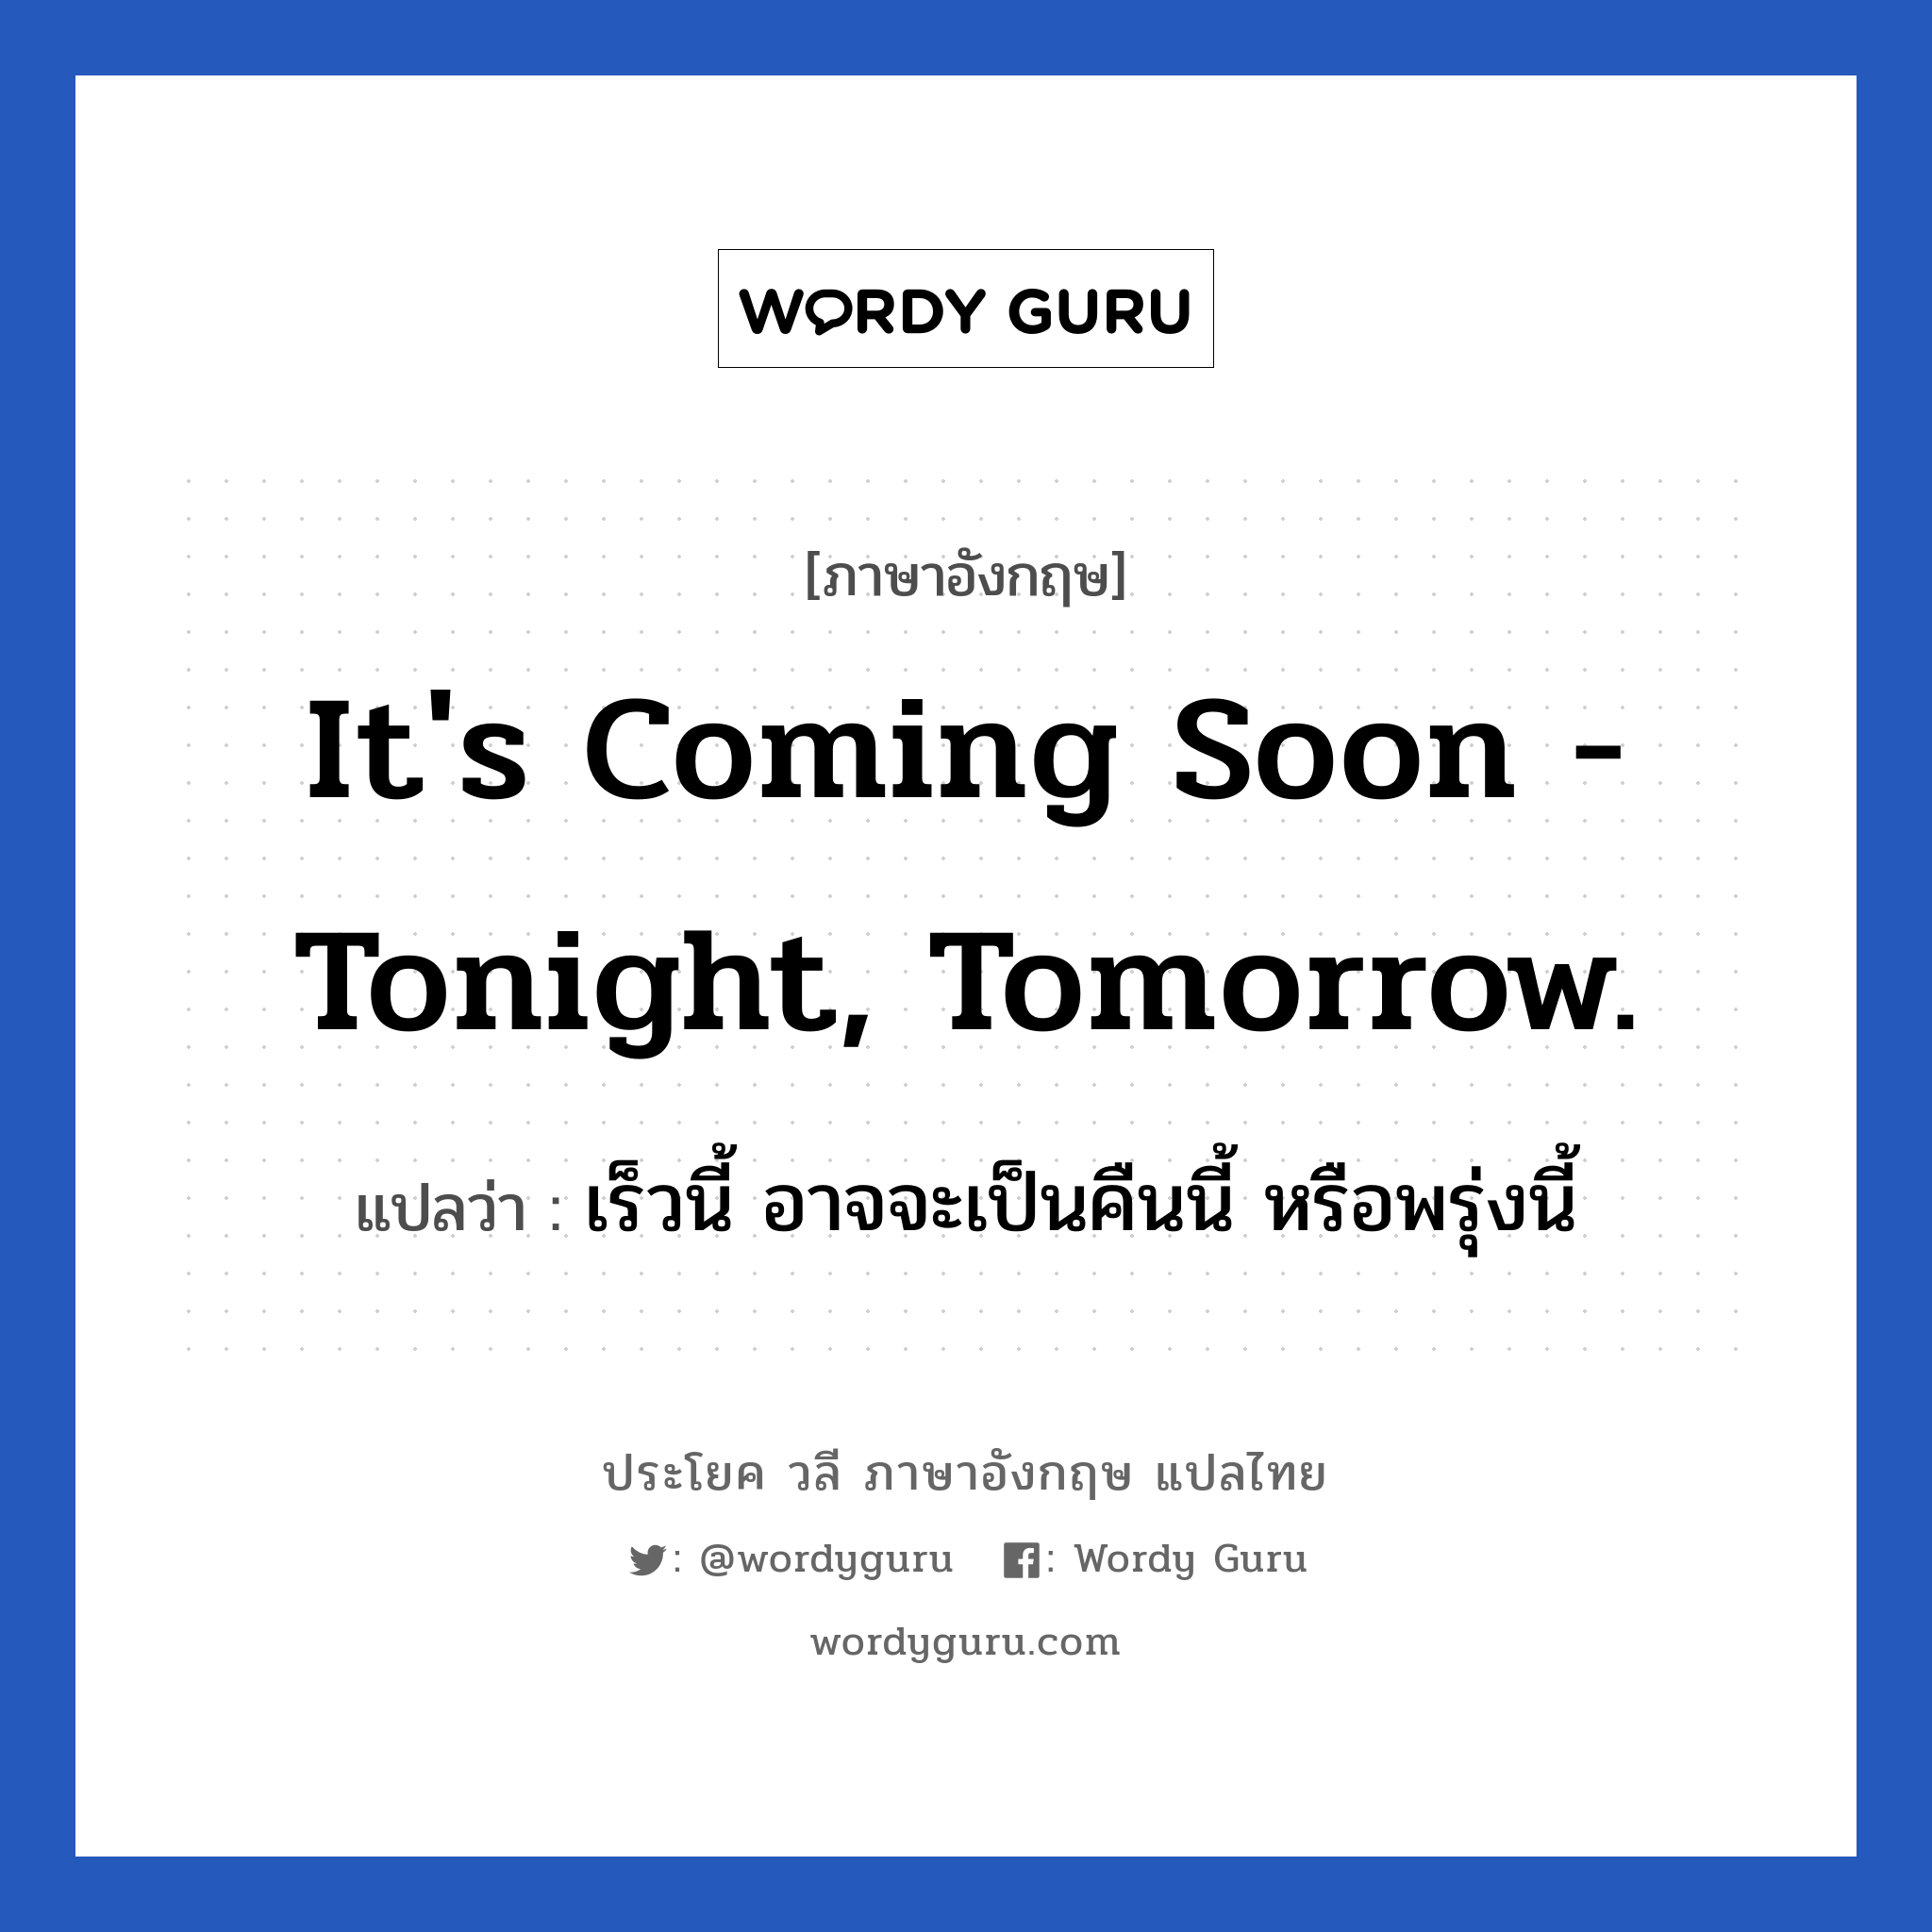 It's coming soon - tonight, tomorrow. แปลว่า?, วลีภาษาอังกฤษ It's coming soon - tonight, tomorrow. แปลว่า เร็วนี้ อาจจะเป็นคืนนี้ หรือพรุ่งนี้